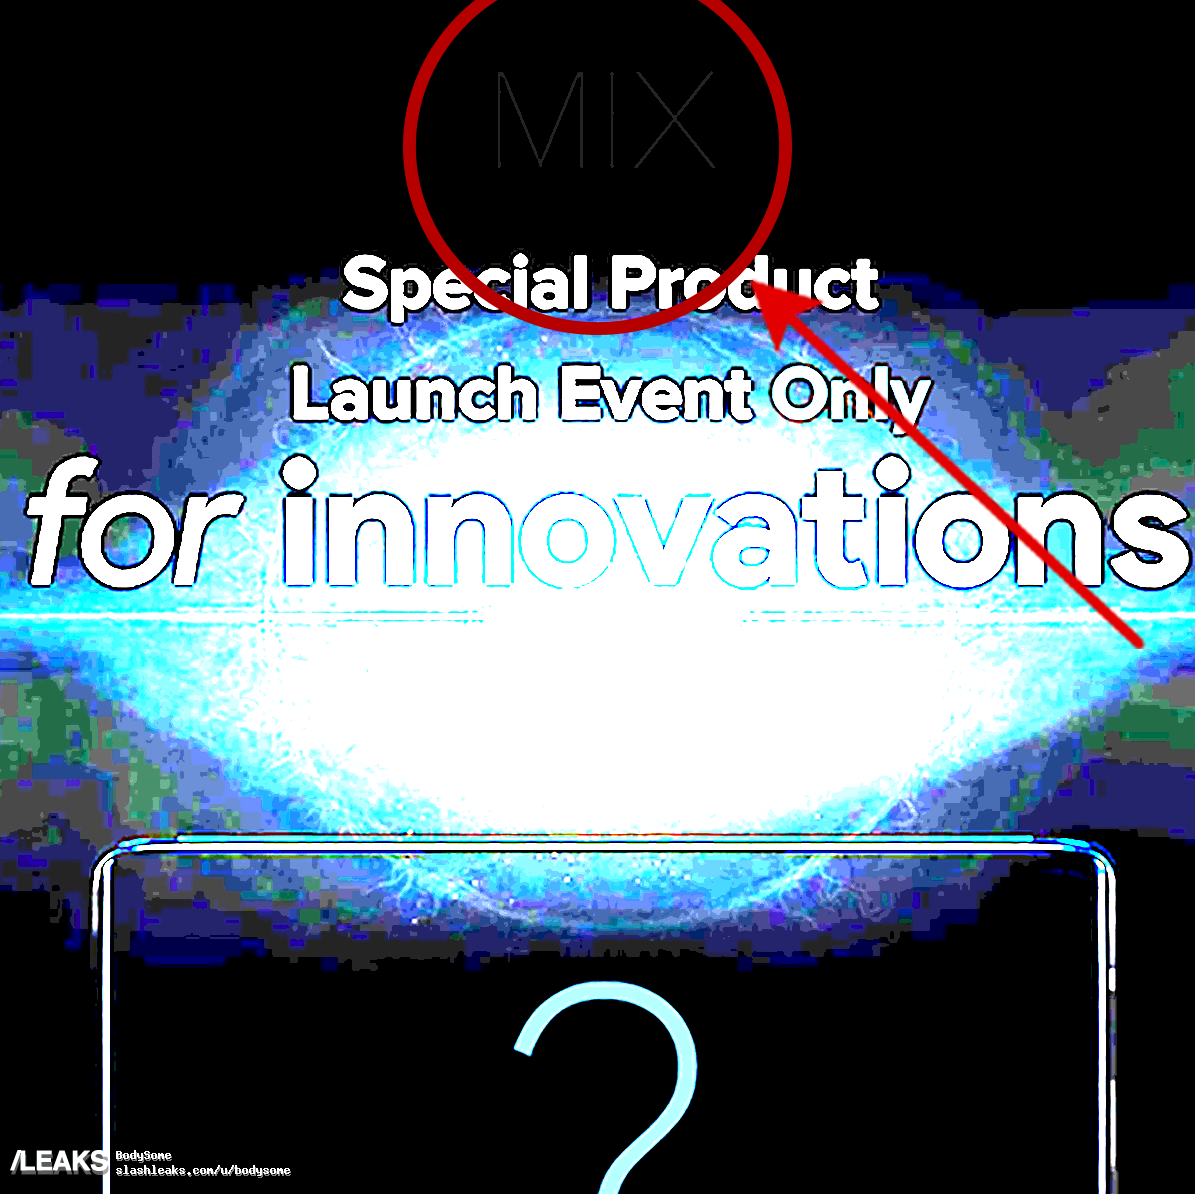 Xiaomi tung teaser hé
lộ thông tin MI MIX 4 sẽ được ra mắt vào ngày 10 tháng 1
tới